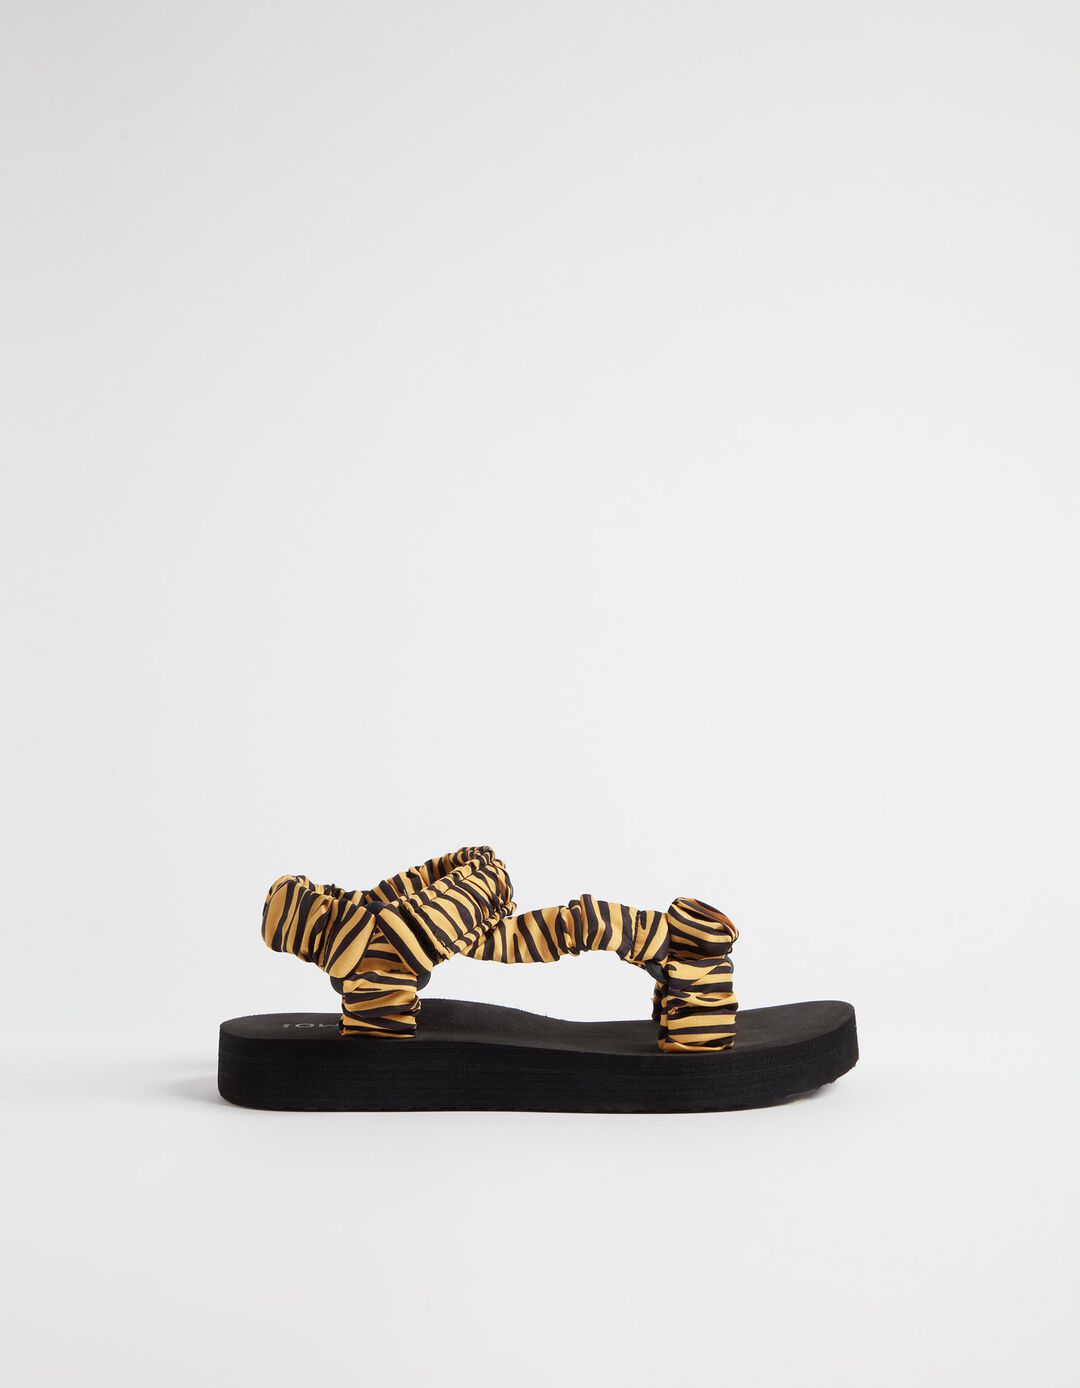 Sandálias Estampado Zebra, Mulher, Preto/Amarelo